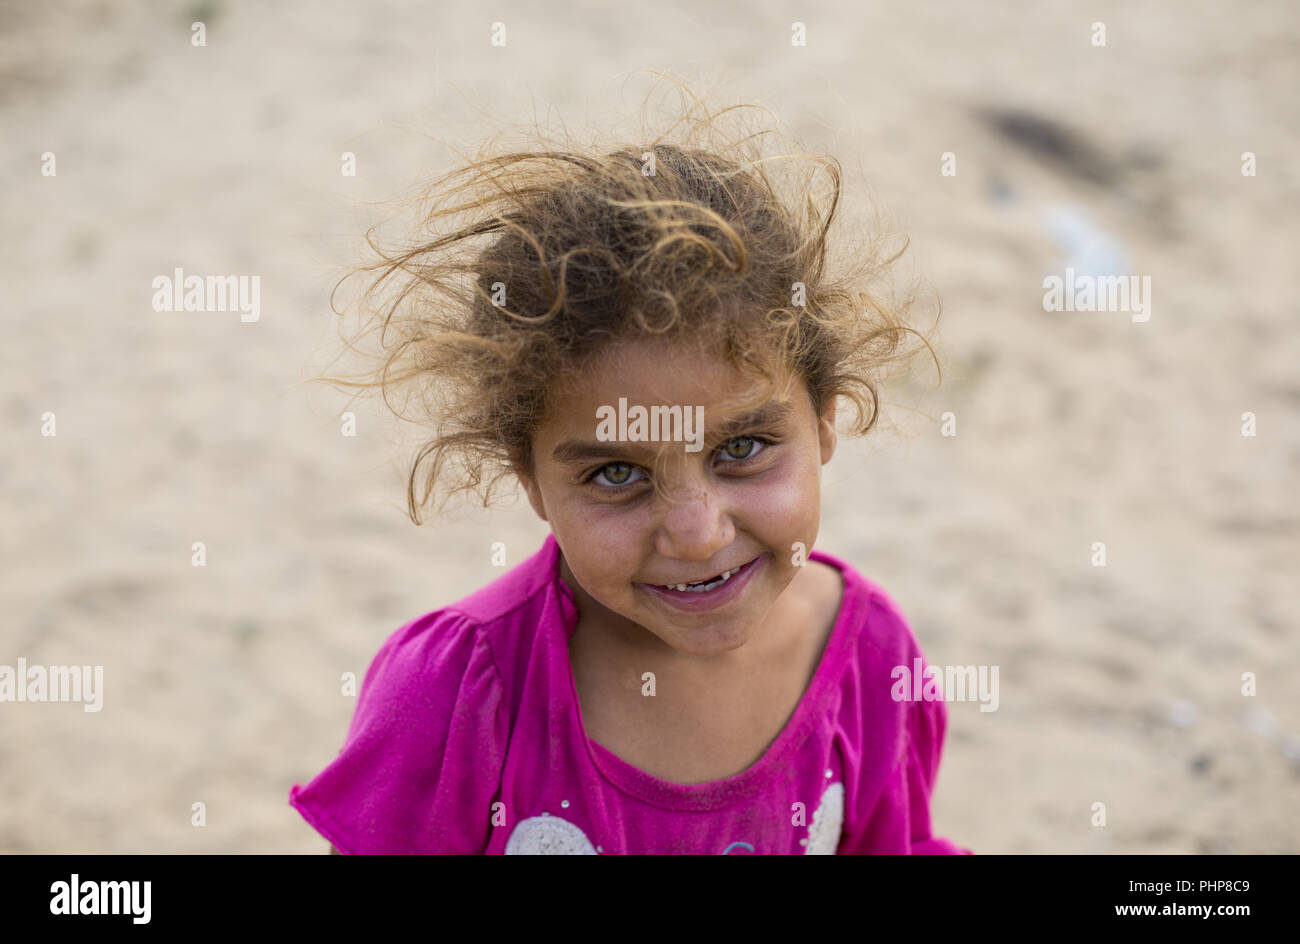 La ciudad de Gaza, en la Franja de Gaza, Gaza. 1 Sep, 2018. Un refugiado palestino kid visto sonriente en un vecindario empobrecido en el campamento de refugiados de Khan Yunis.Según informes de los medios de comunicación el 31 de agosto de 2018, Estados Unidos ha terminado toda la financiación del Organismo de Obras Públicas y Socorro para los Refugiados de Palestina en el Cercano Oriente (OOPS). La administración ha examinado cuidadosamente la cuestión y determinó que los Estados Unidos no hará contribuciones adicionales al OOPS, según una declaración del Departamento de Estado de Estados Unidos. Crédito: Mahmoud Issa/SOPA Images/Zuma alambre/Alamy Live News Foto de stock